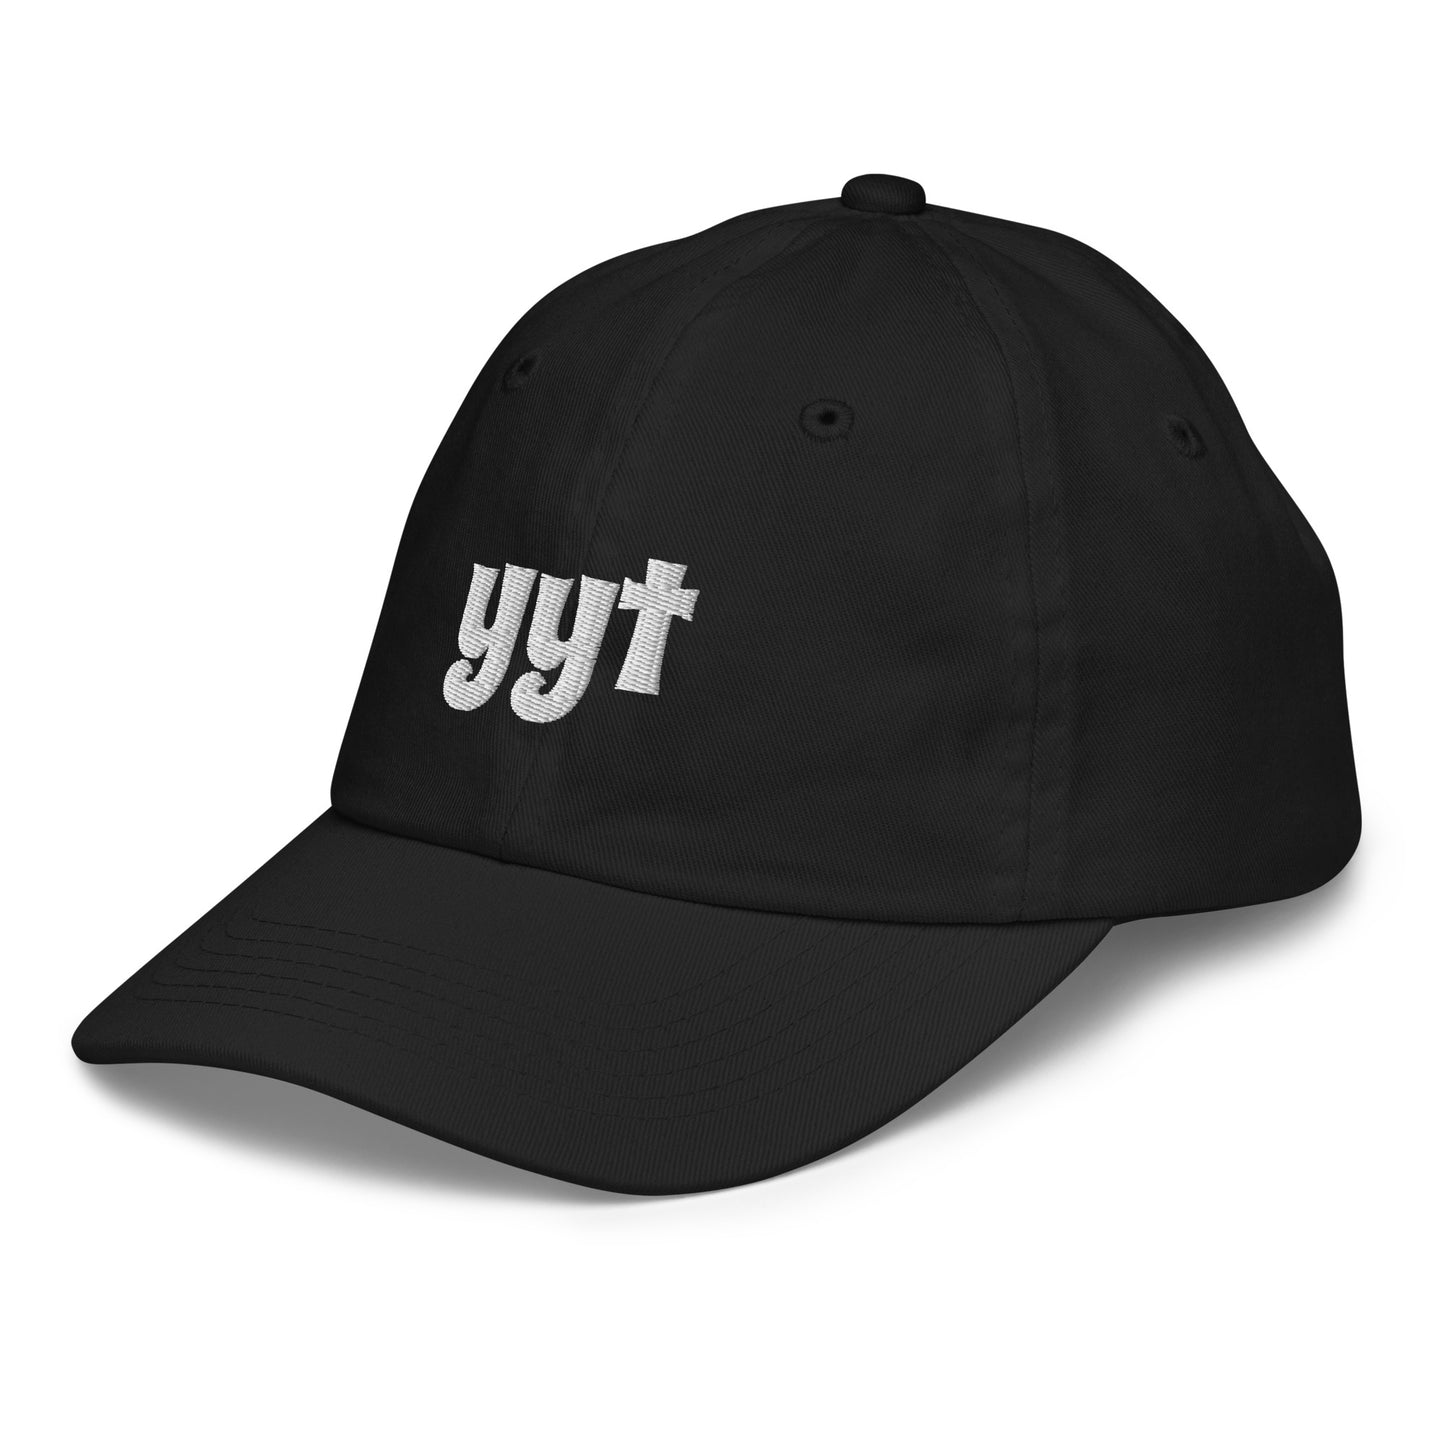 Groovy Kid's Baseball Cap - White • YYT St. John's • YHM Designs - Image 11